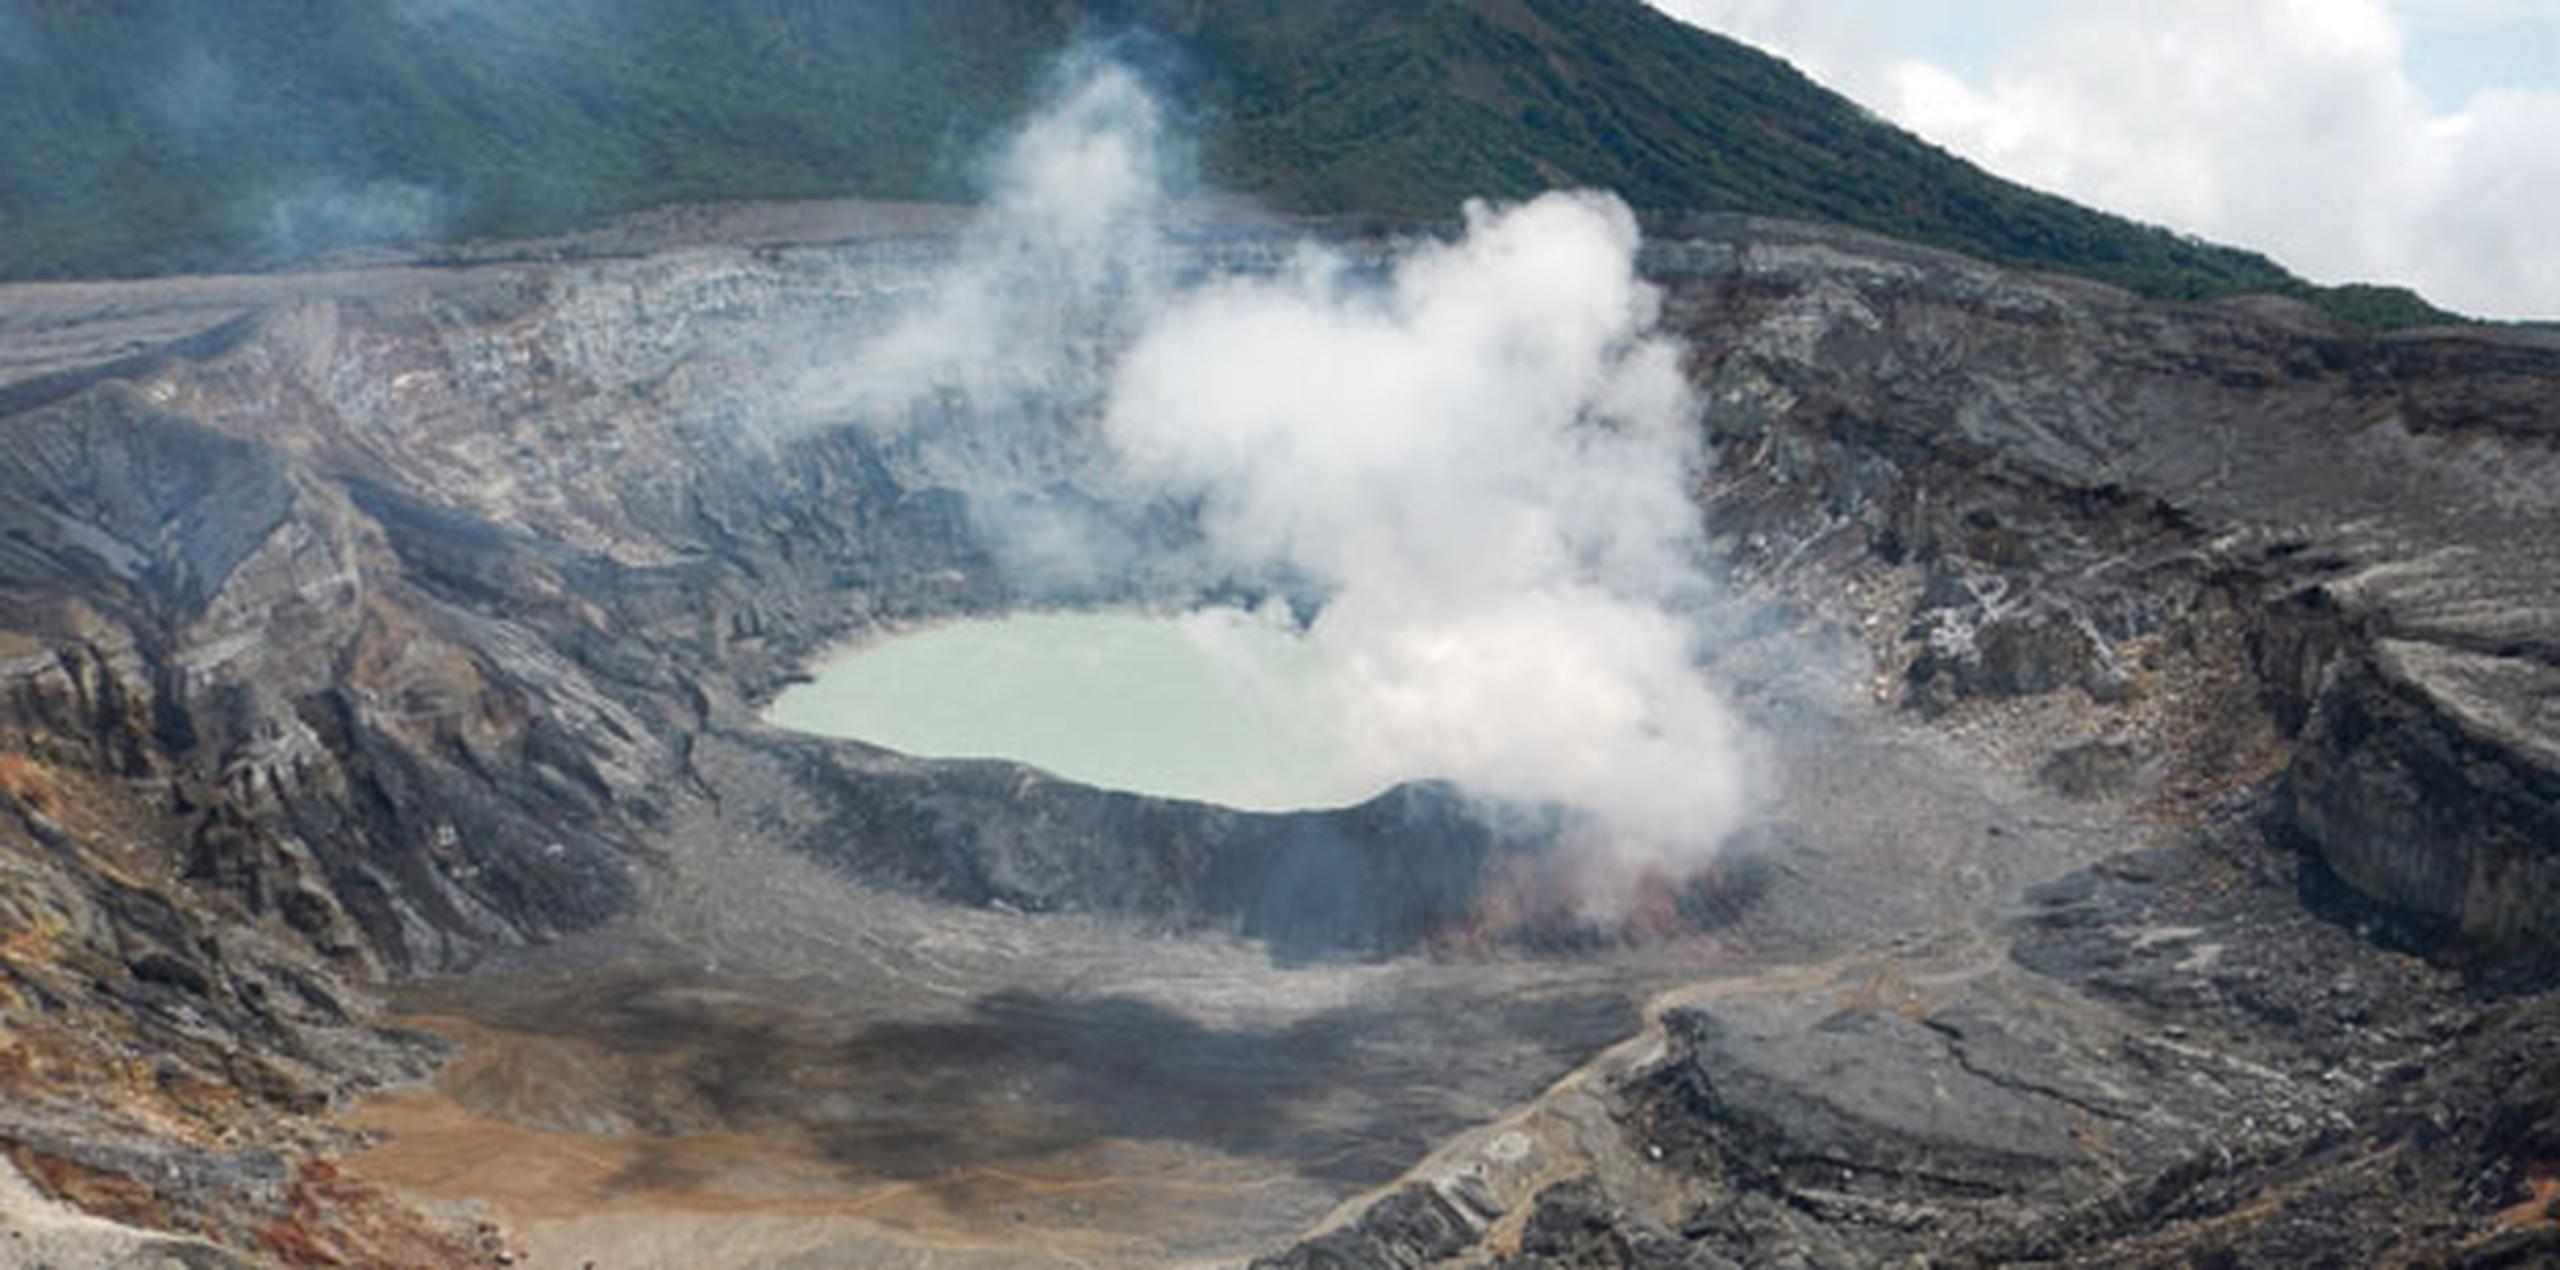 Antes de su cierre, el volcán Poás era visitado anualmente por 400,000 turistas, quienes eran atraídos por su laguna de agua turquesa y su gigantesco cráter, que se ubica a 350 metros de profundidad. (Archivo)